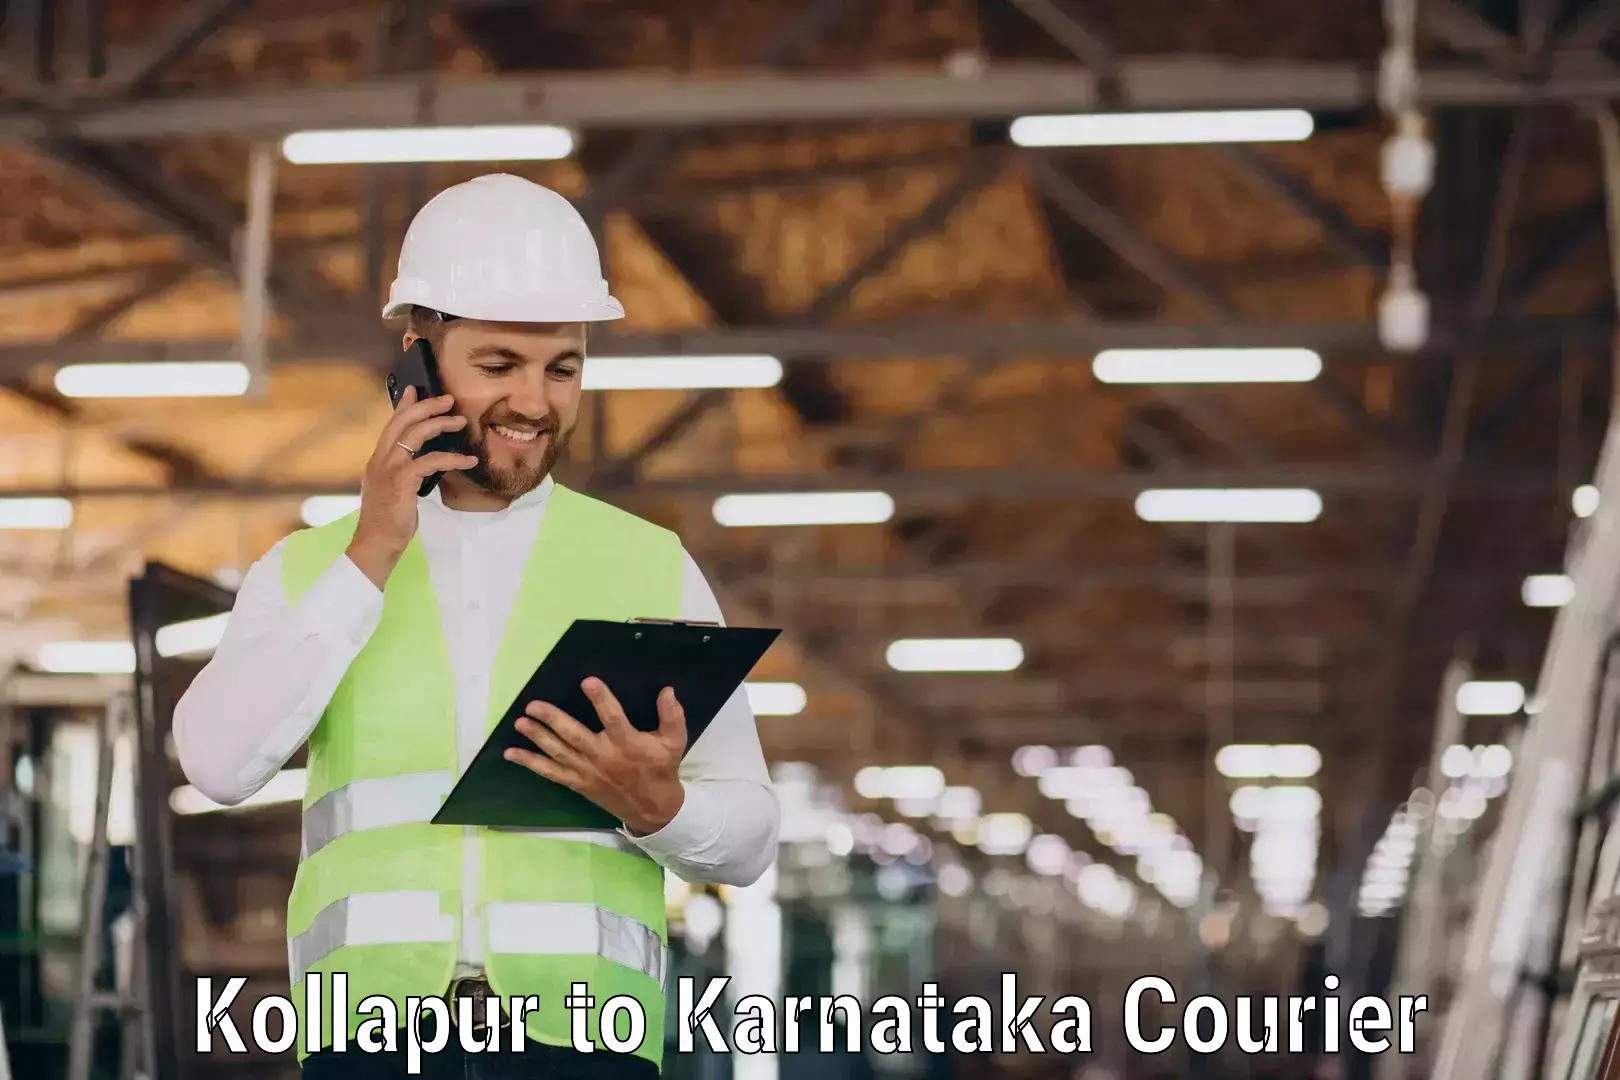 Easy return solutions Kollapur to Srirangapatna